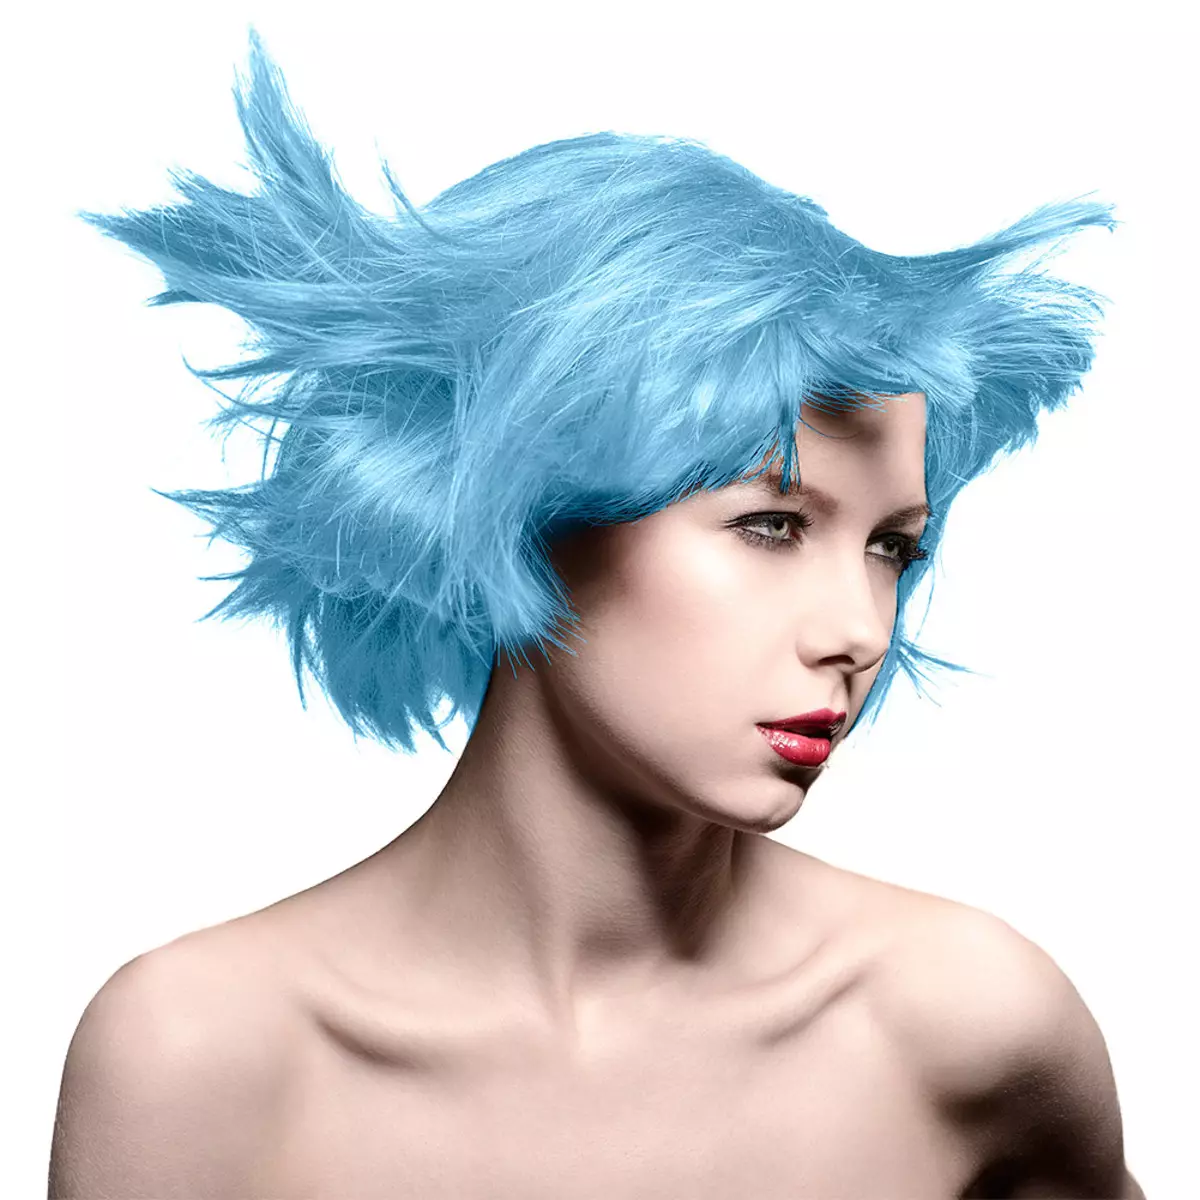 Plava boja kose: Pregled otpornih boja kose s plavim tampom, od svijetlo plave do crne i plave nijanse 5402_28